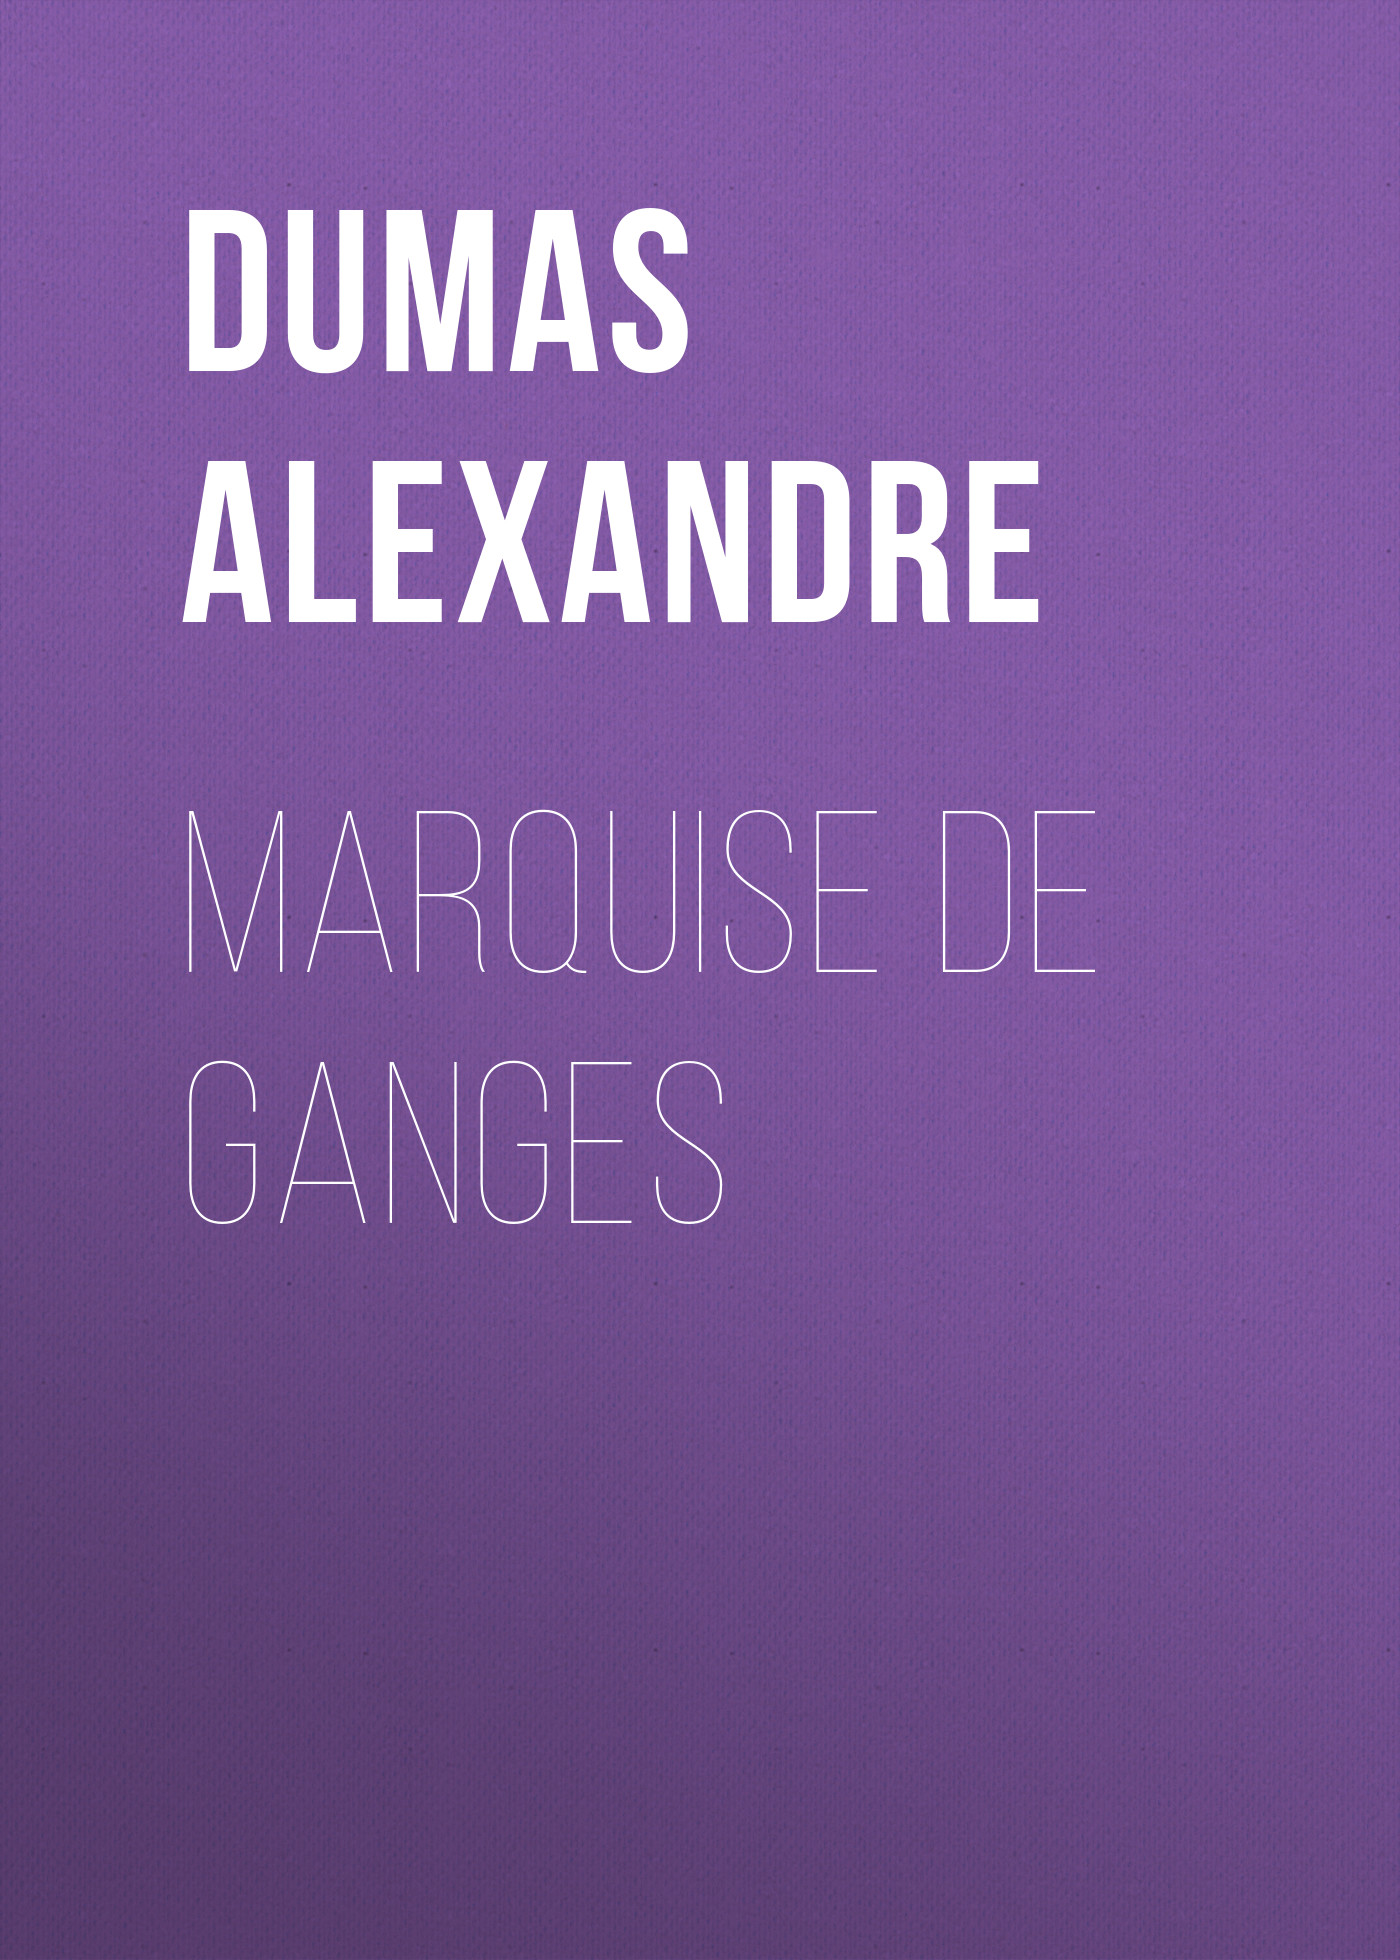 Книга Marquise De Ganges из серии , созданная Alexandre Dumas, может относится к жанру Литература 19 века, Зарубежная старинная литература, Зарубежная классика. Стоимость электронной книги Marquise De Ganges с идентификатором 25202527 составляет 0 руб.